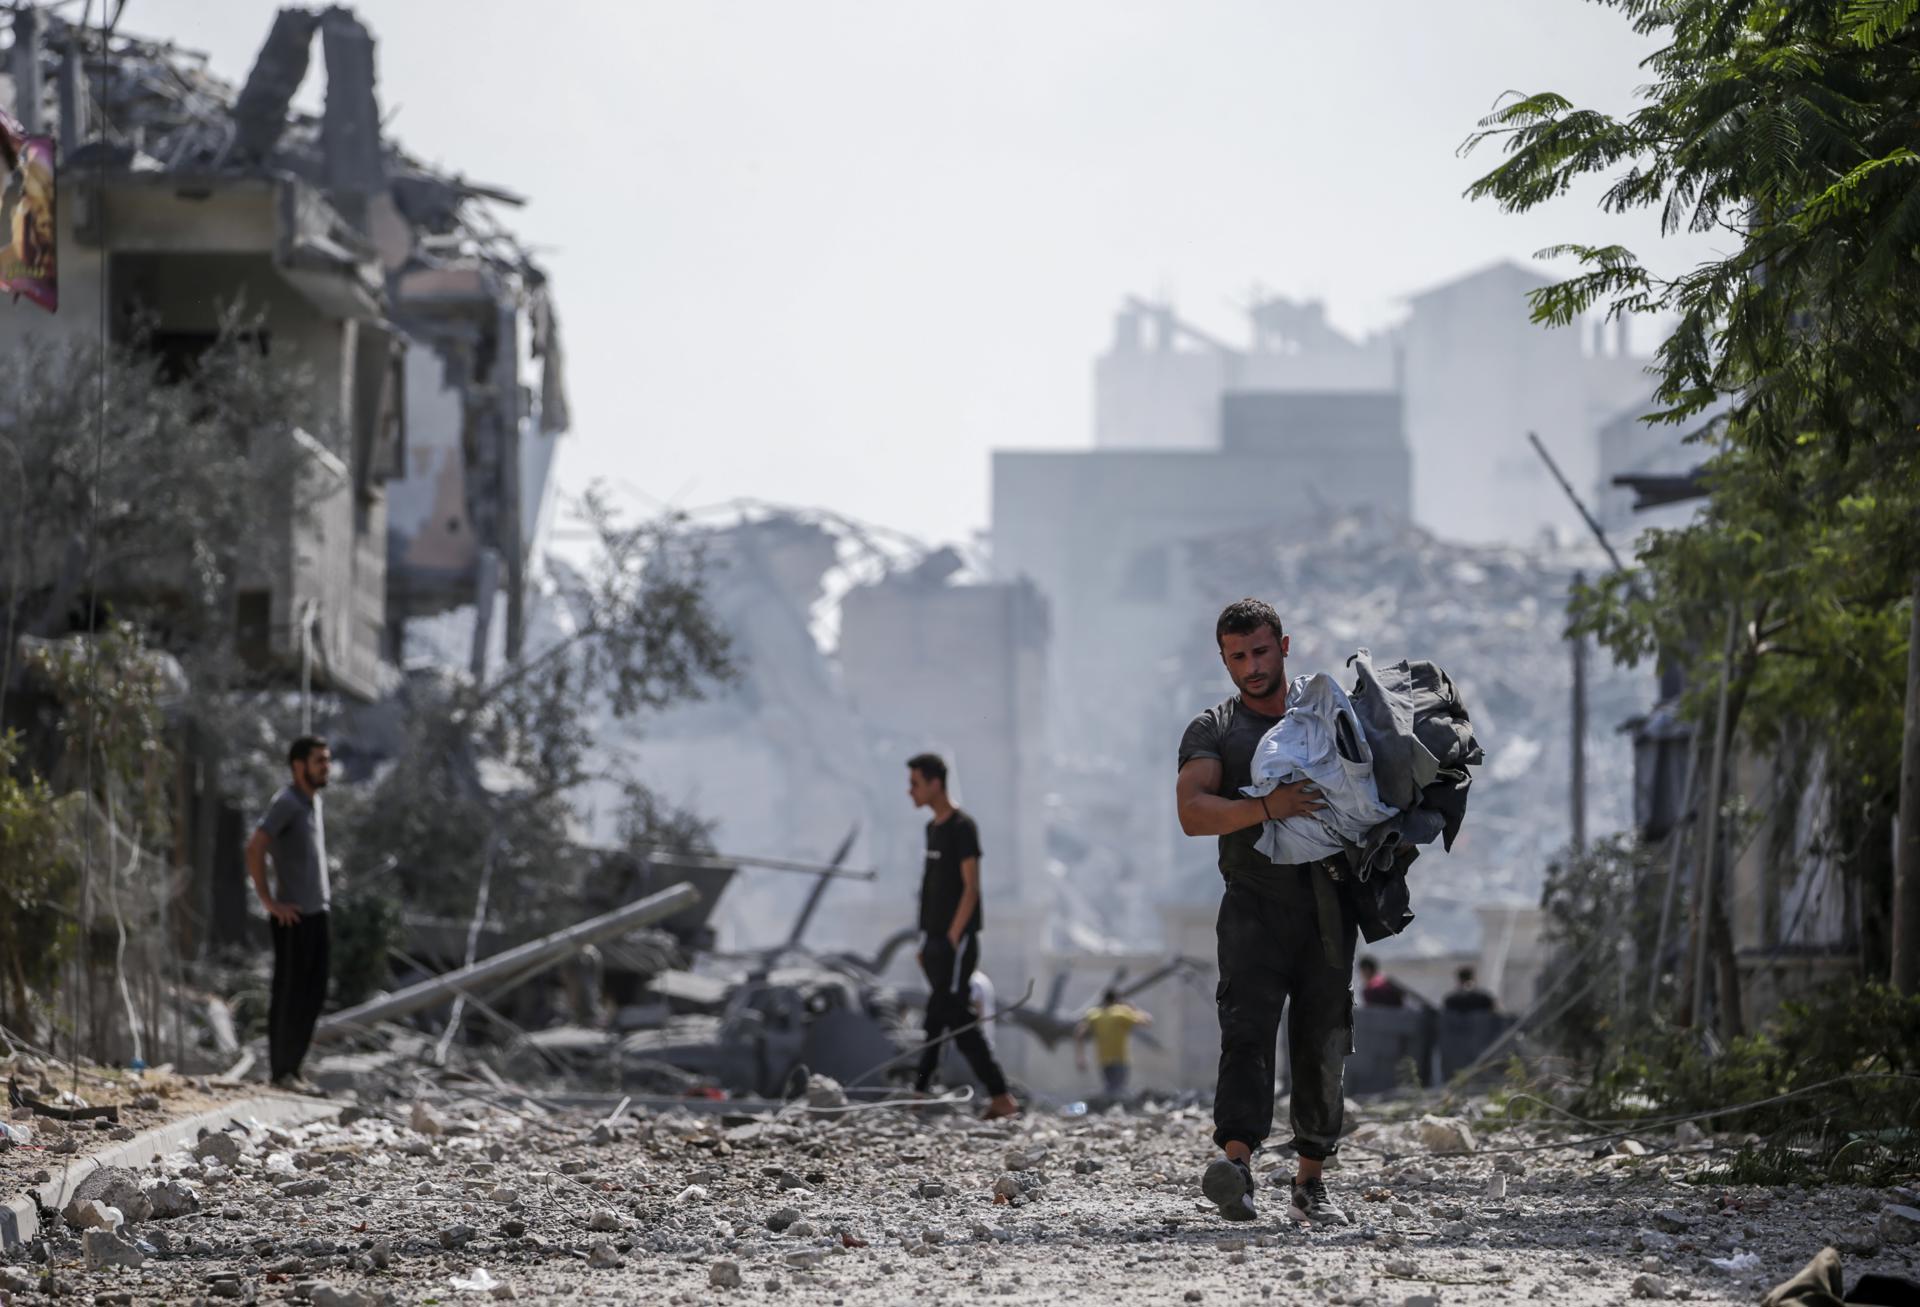 Cruz Roja: Los ataques contra civiles en Israel y Gaza conducen a más violencia y odio